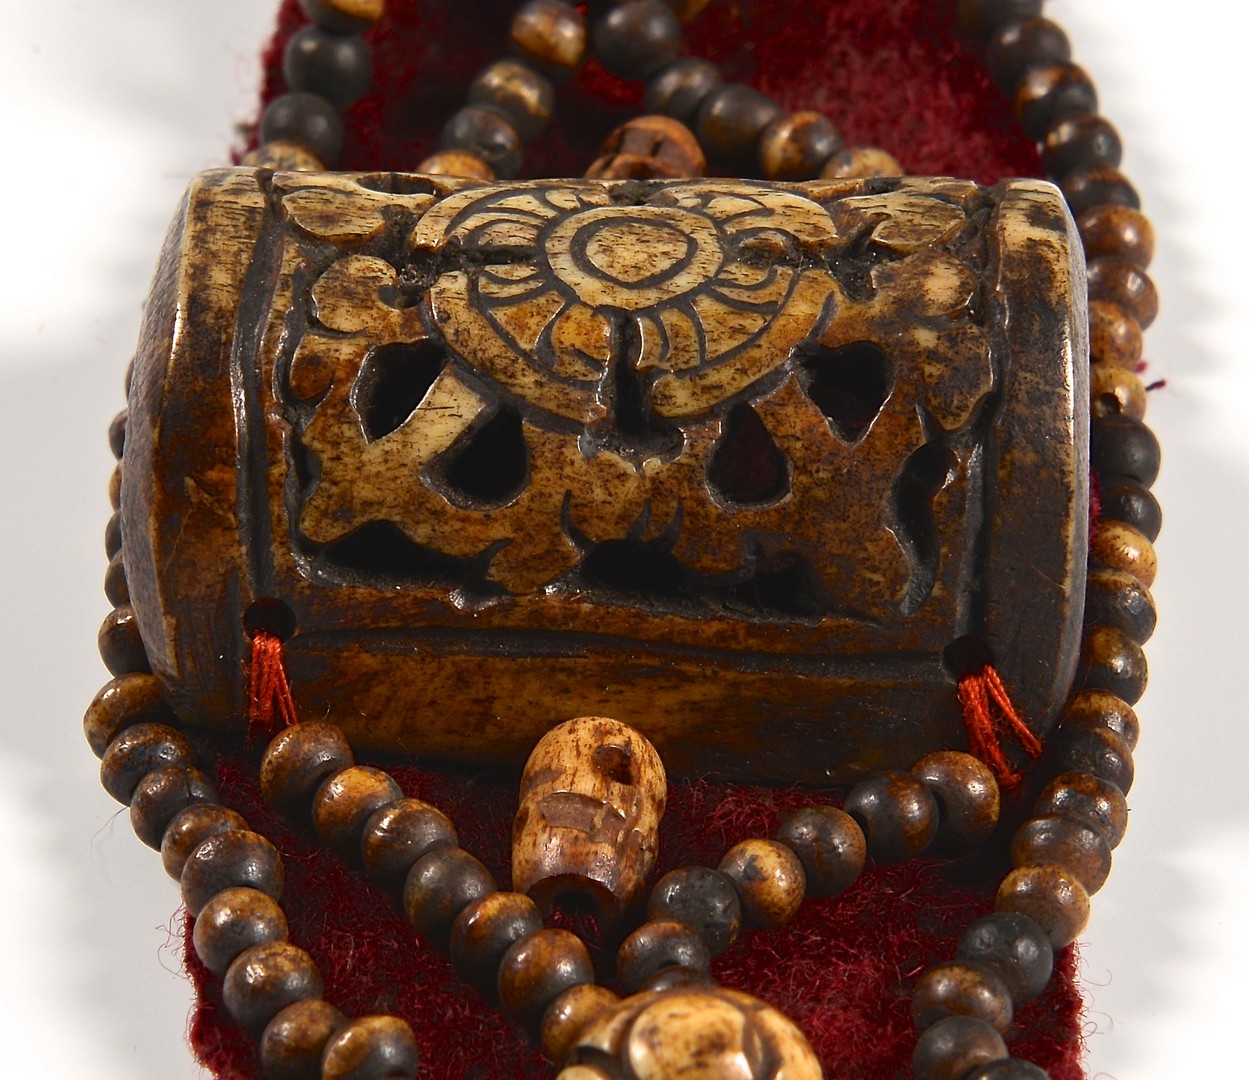 Lot 15: Tibetan Buddhist Crown Ringga & Tibetan Bone Brace